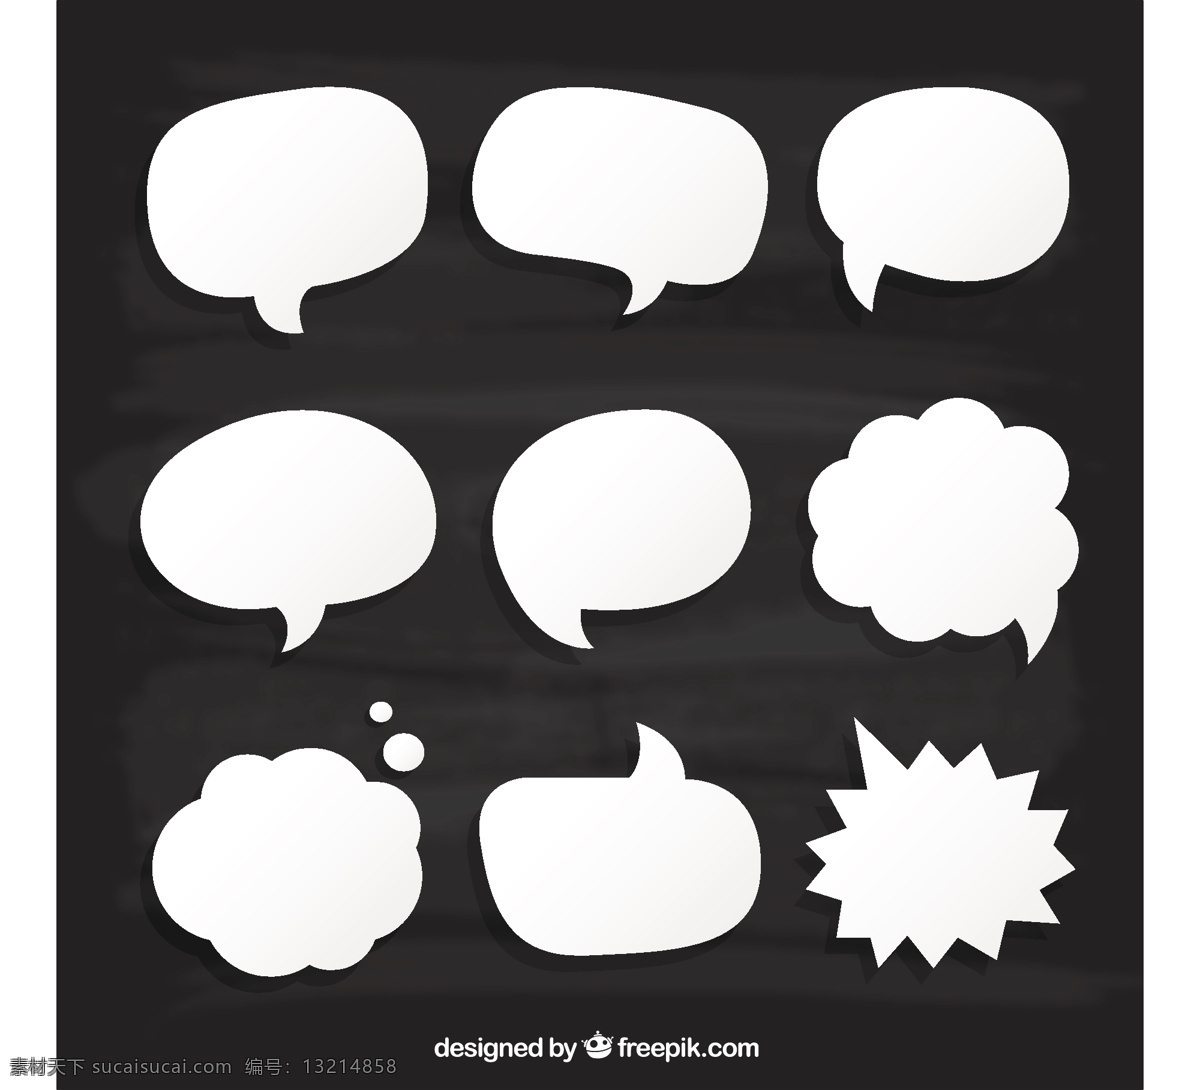 硬纸板 上 白 泡 纸 漫画 动画 语音气泡 气泡 说话 气球 语音 短信 对话 对话框 纸板 谈论泡沫 滑稽的泡沫 语音气球 白色